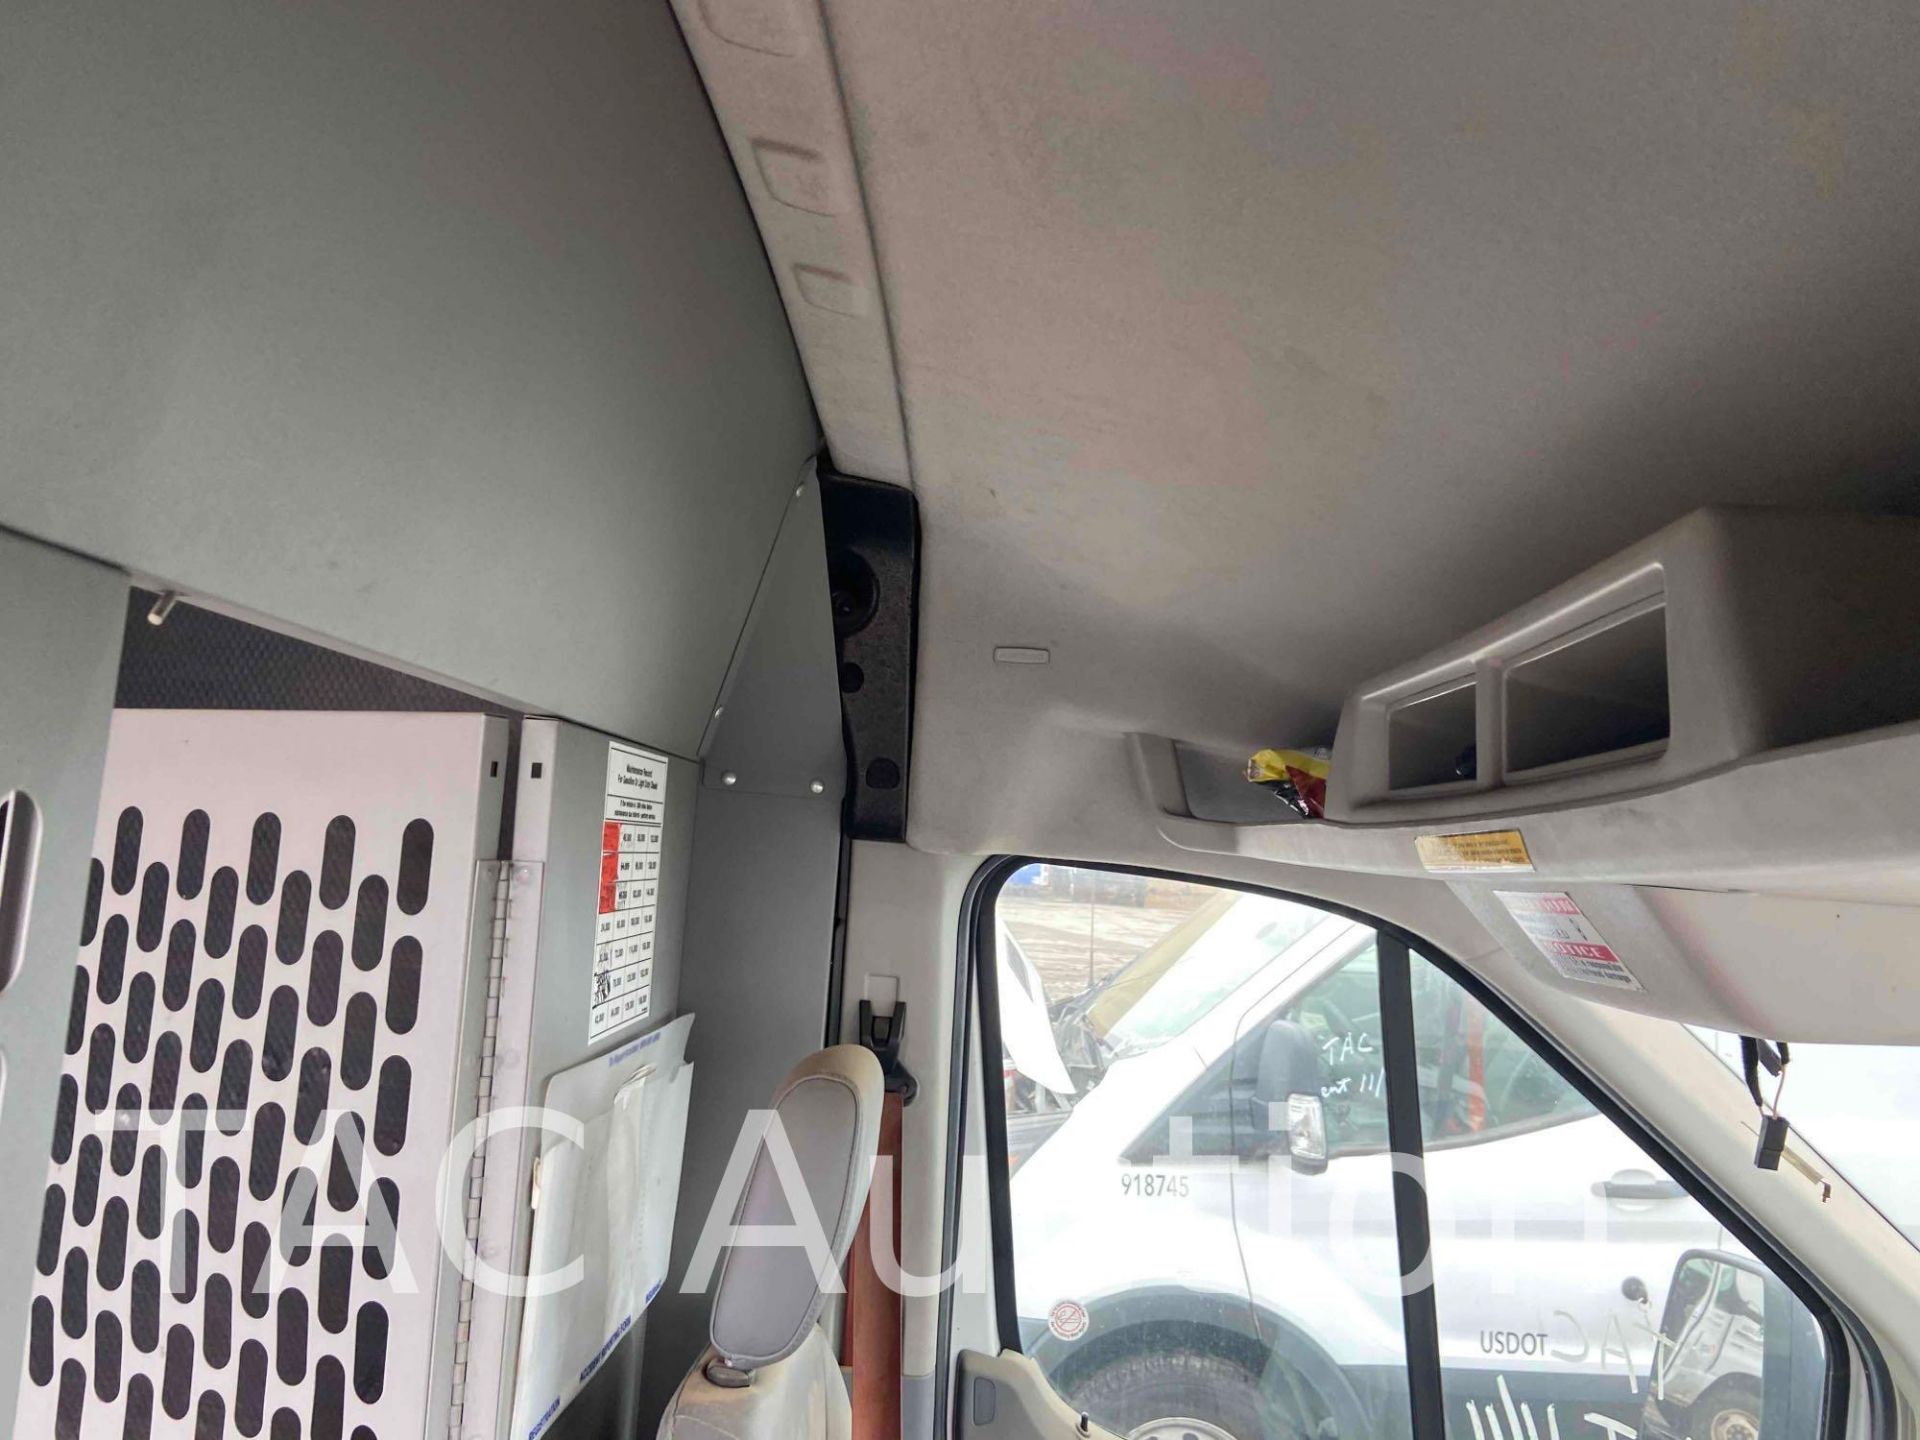 2017 Ford Transit 150 Cargo Van - Image 52 of 86